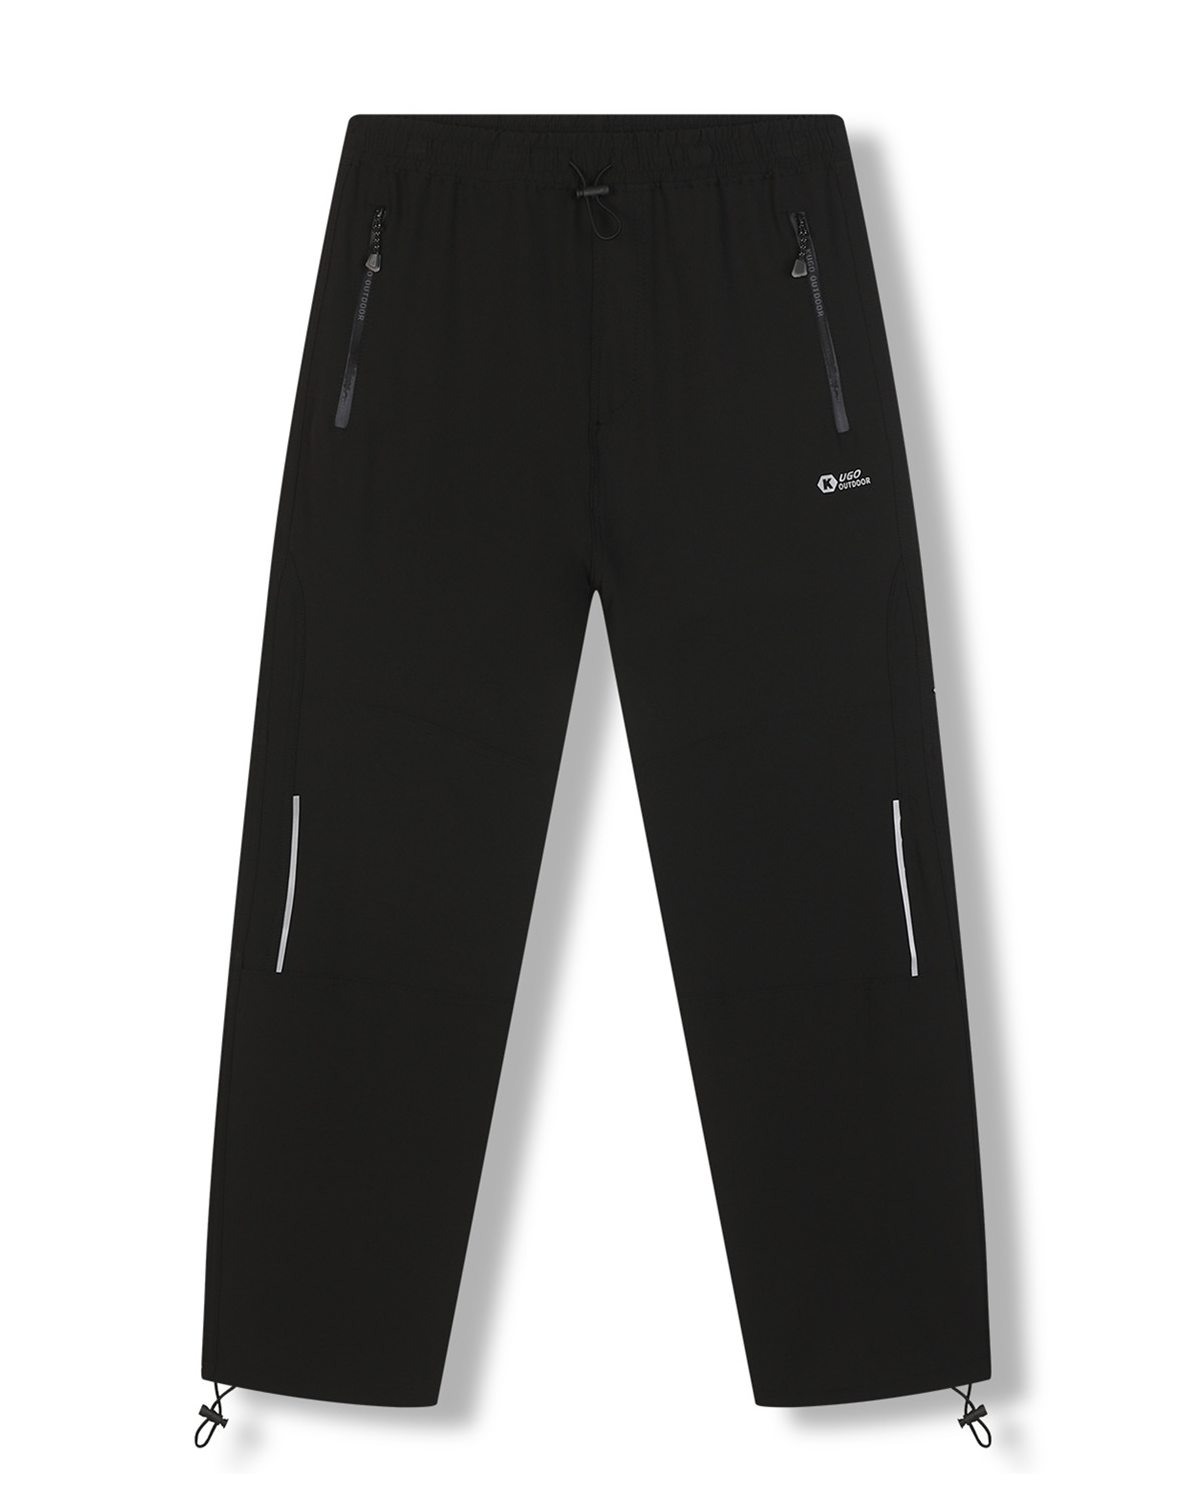 Pánské softshellové kalhoty - KUGO HK7587, celočerná Barva: Černá, Velikost: XL